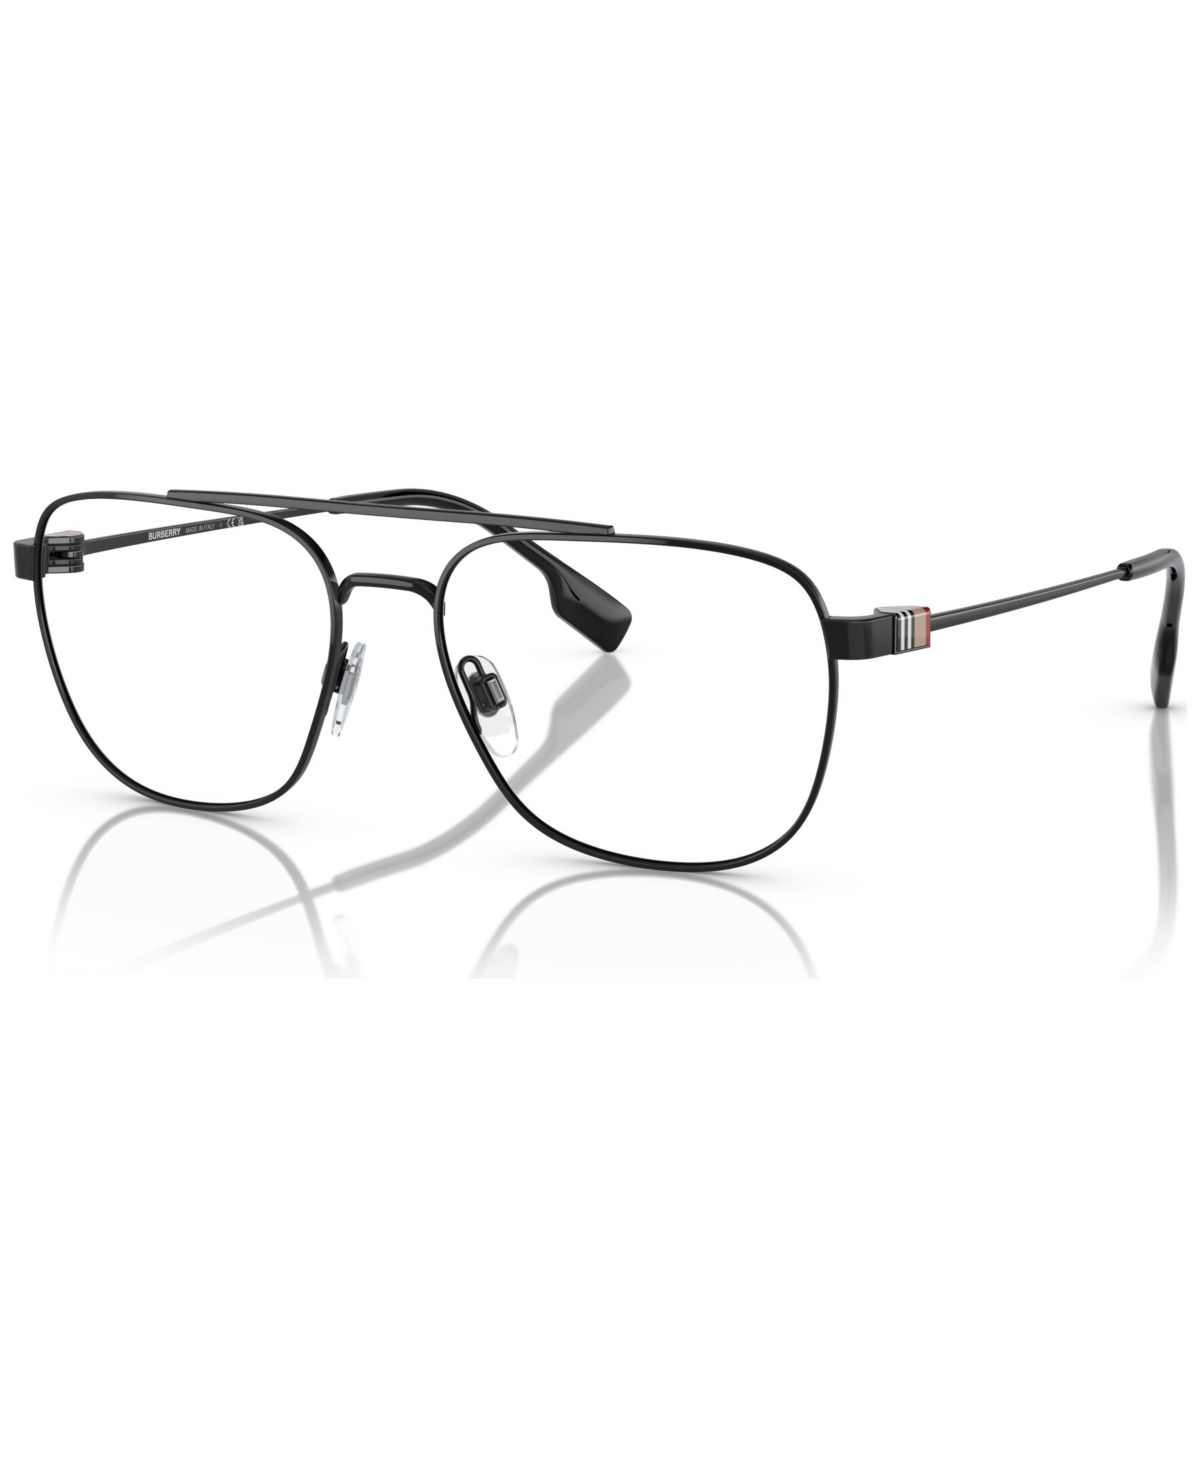 Men's Square Eyeglasses, BE1377 57 - Black